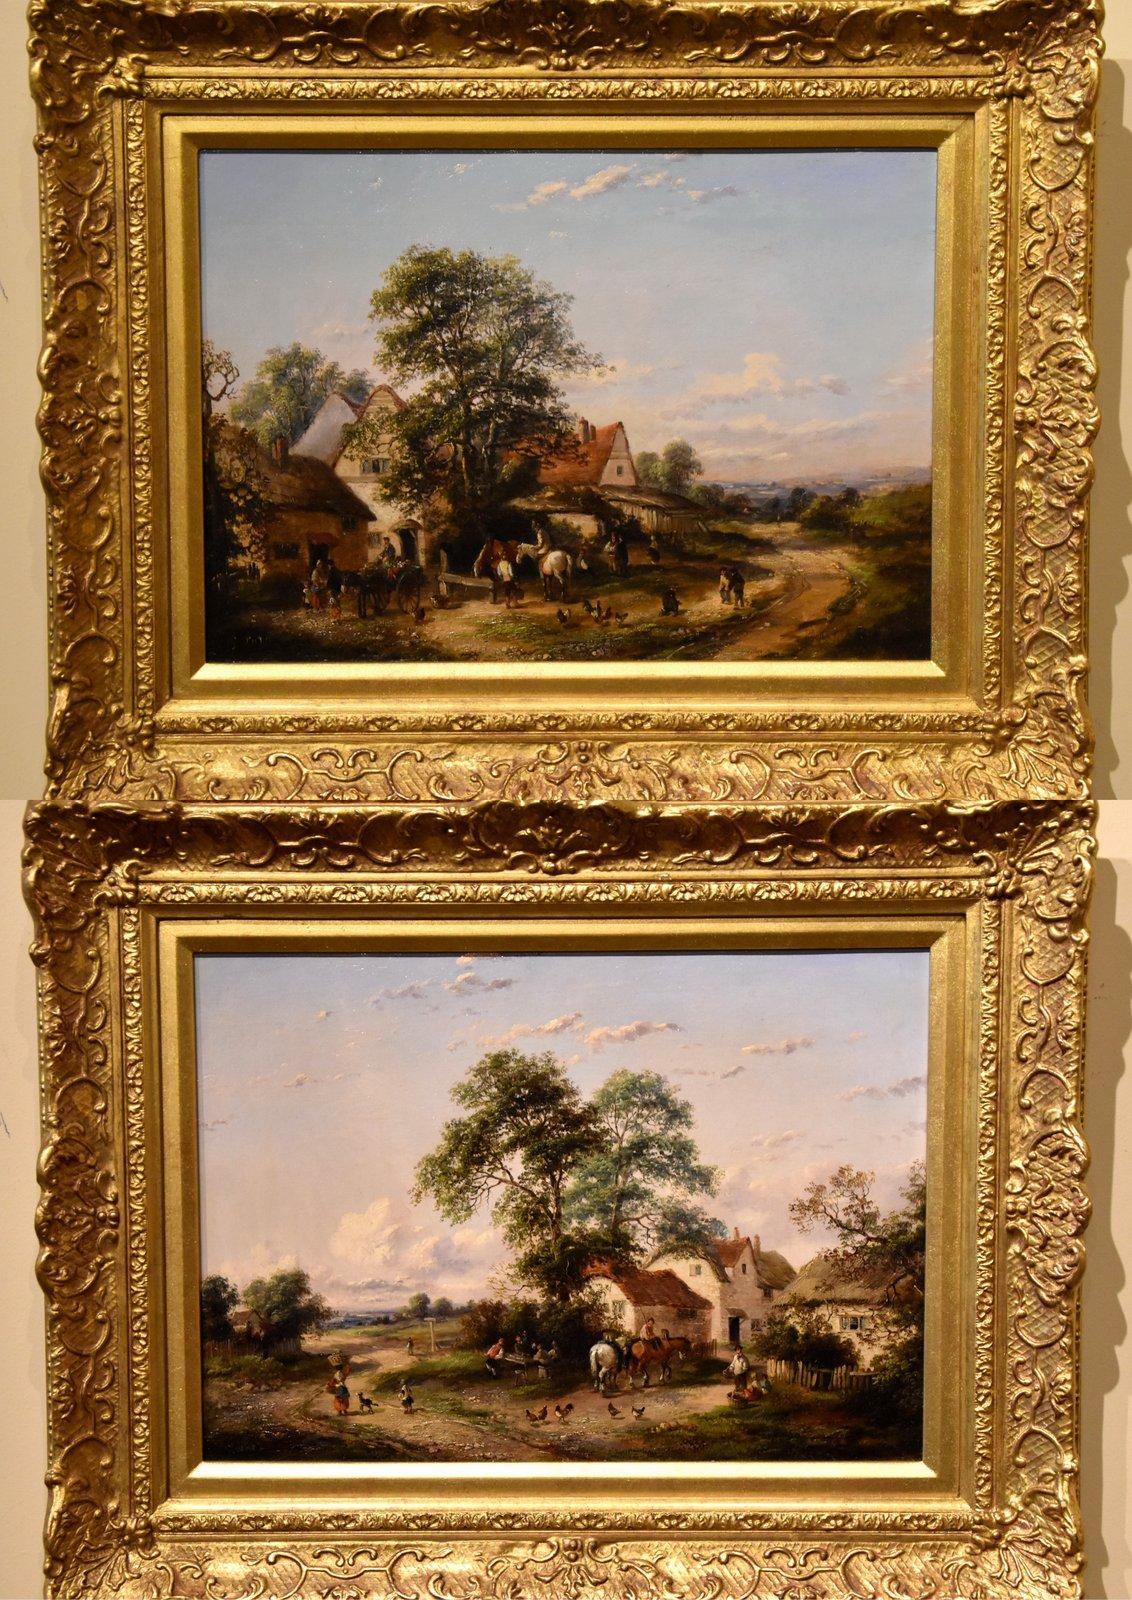 Paire de peintures à l'huile de Georgina LARA "A Busy Village Scene" qui a prospéré  1862- 1871 Peintre de qualité de vues de villages domestiques. Elle a exposé à la Royal Society of British artists et à la British Institution. Les deux huiles sur